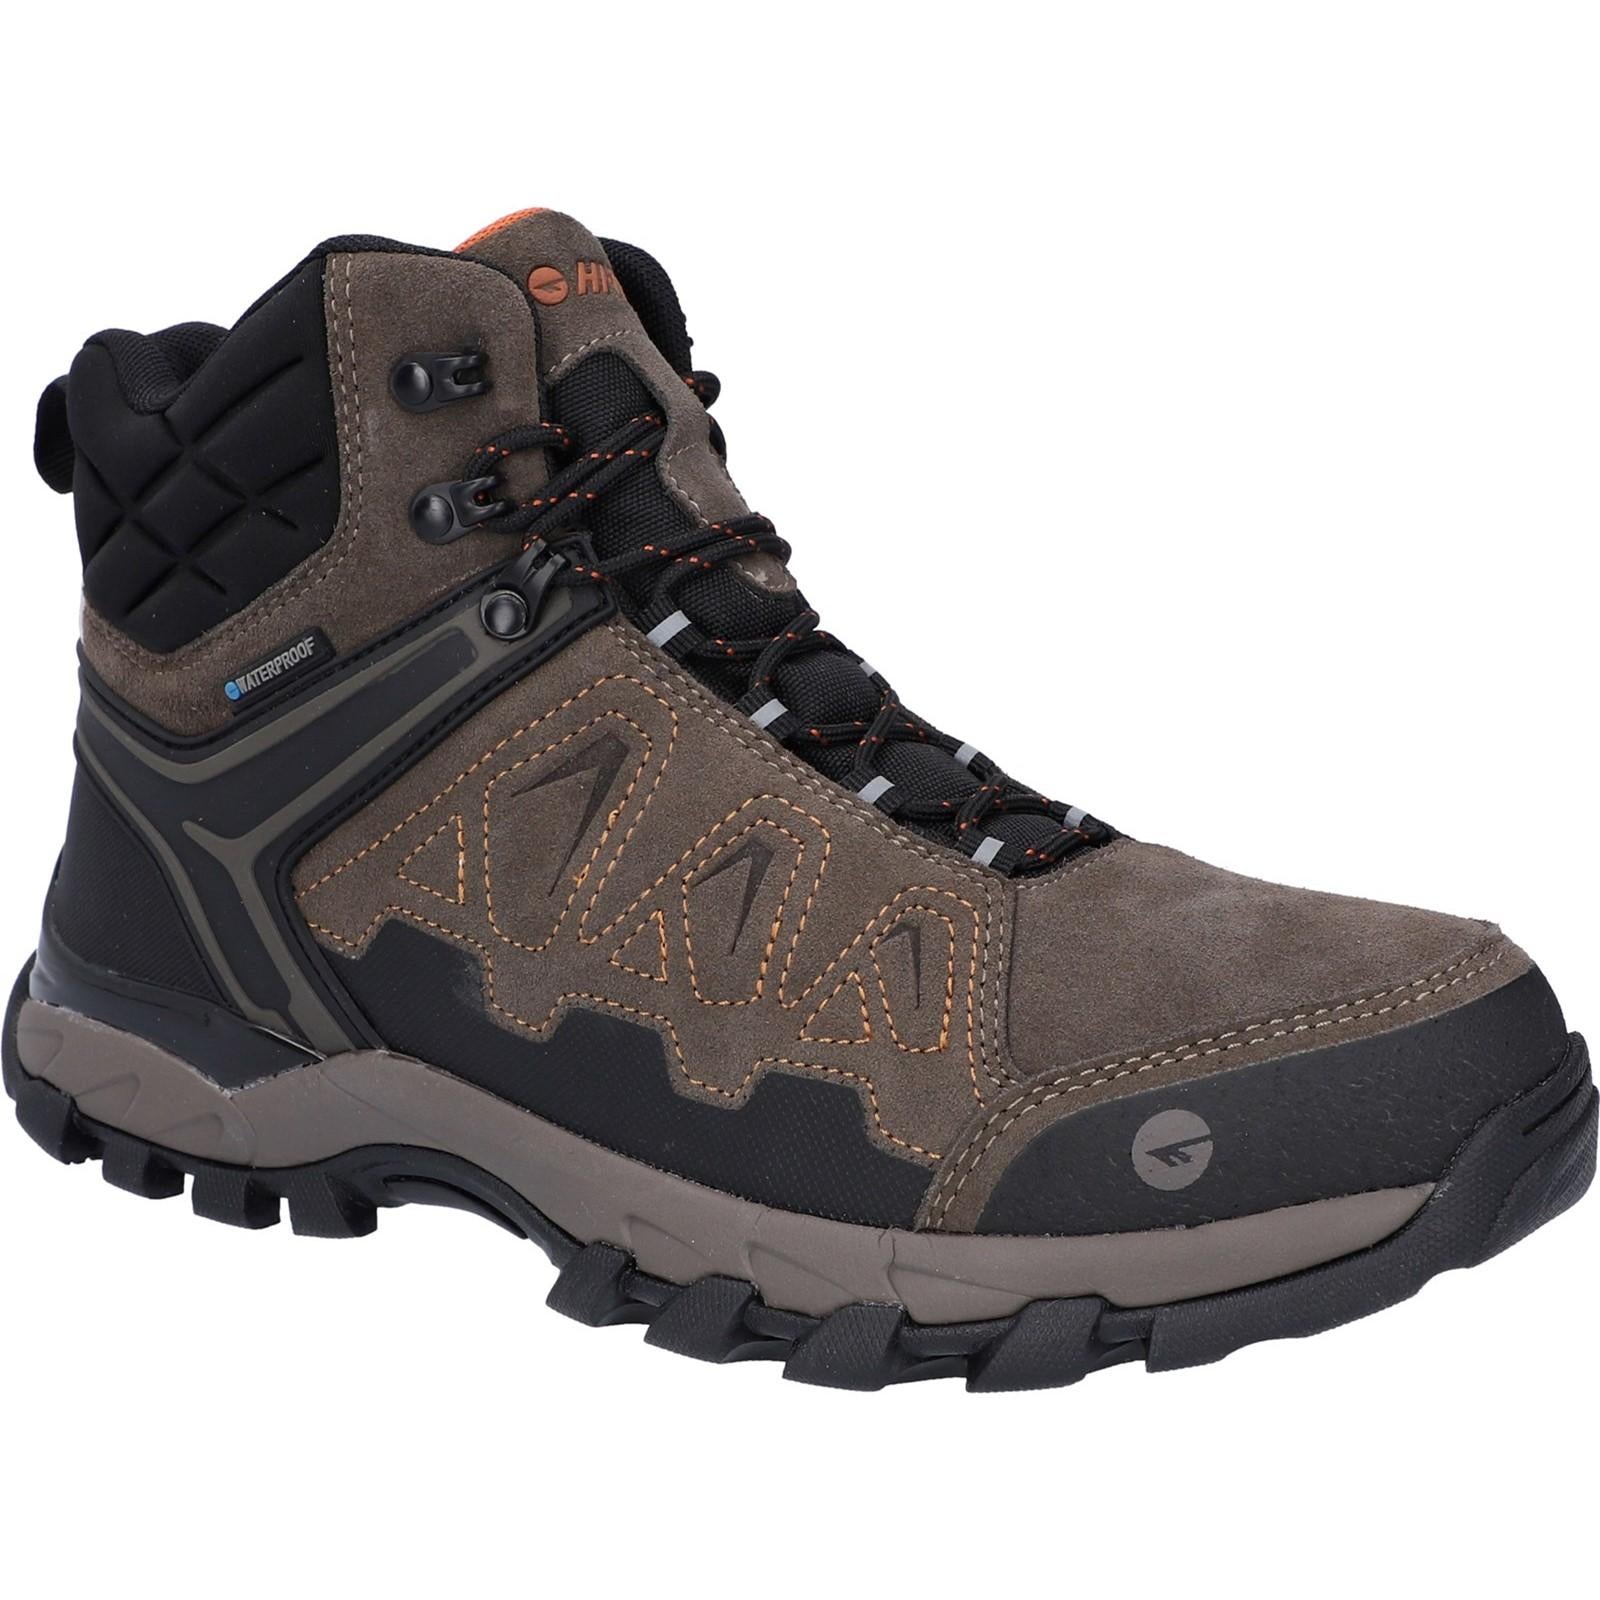 Hi-tec V-Lite Explorer WP Hiking Boots